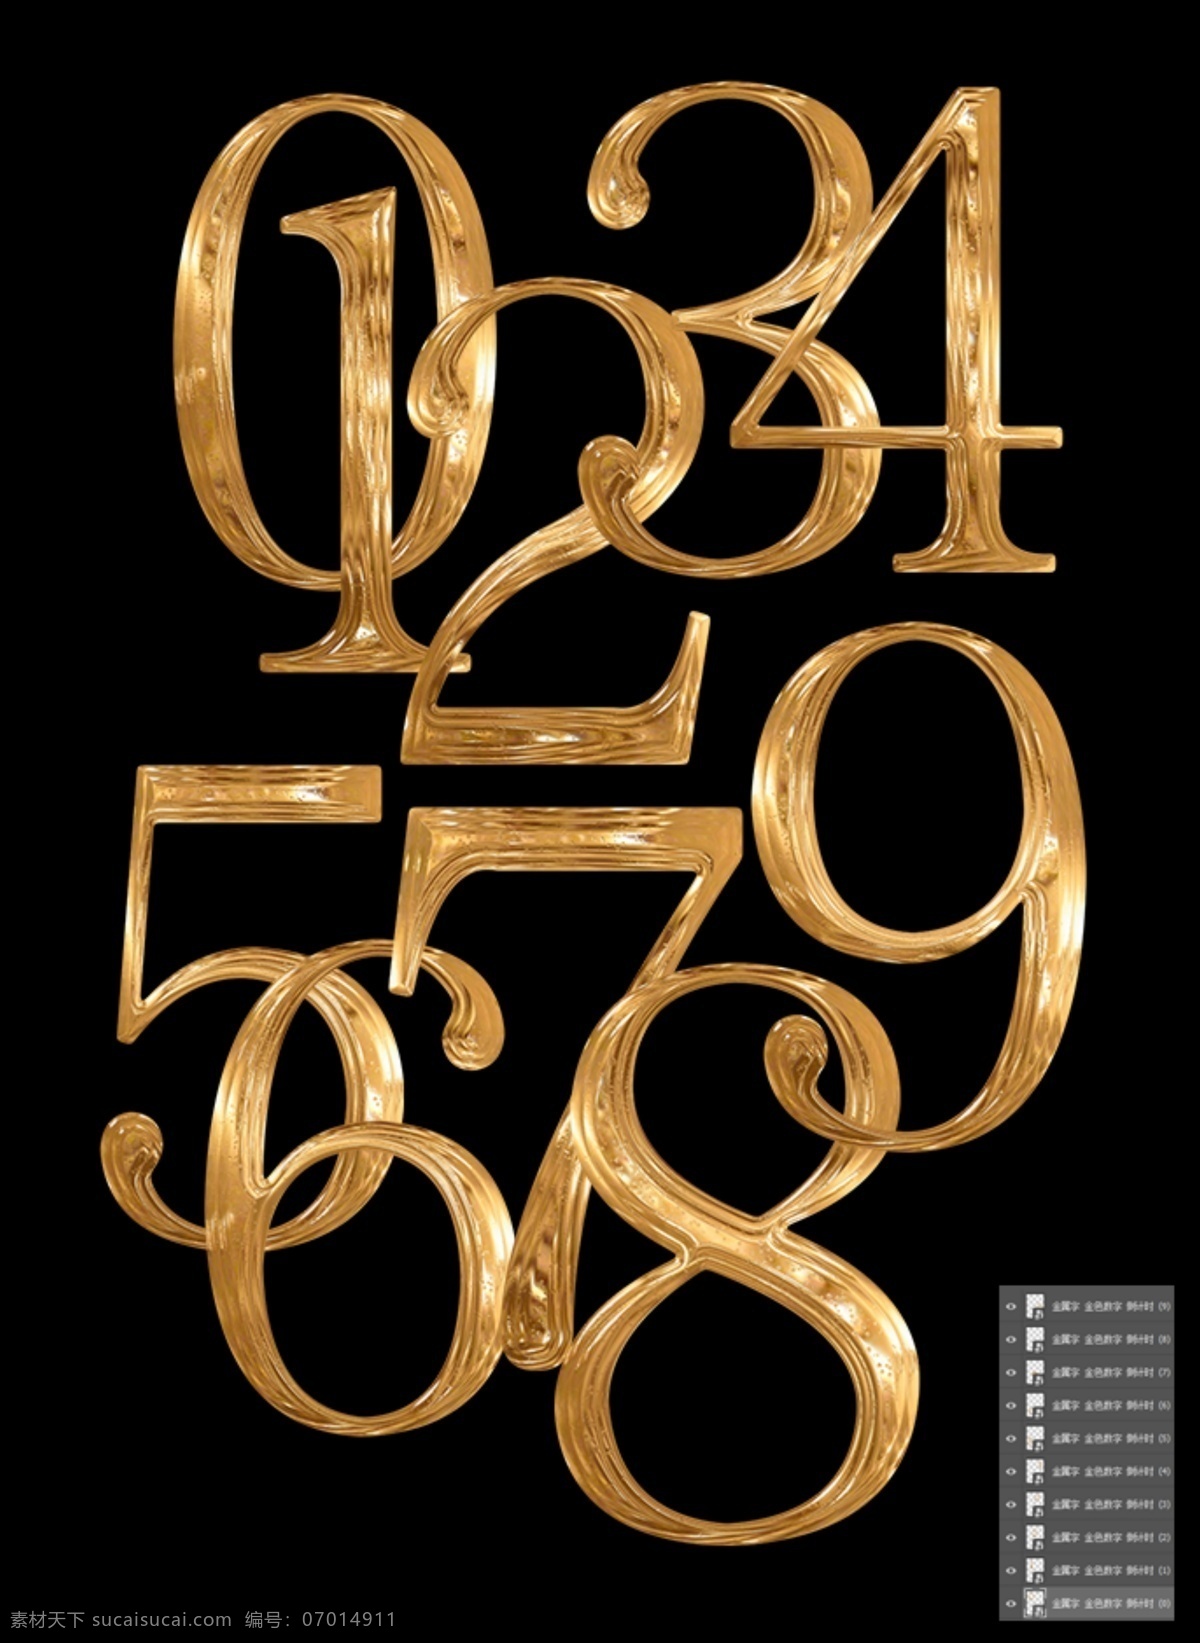 金色数字 倒计时123 立体字 倒计时 金色 金属字体 数字效果 立体数字